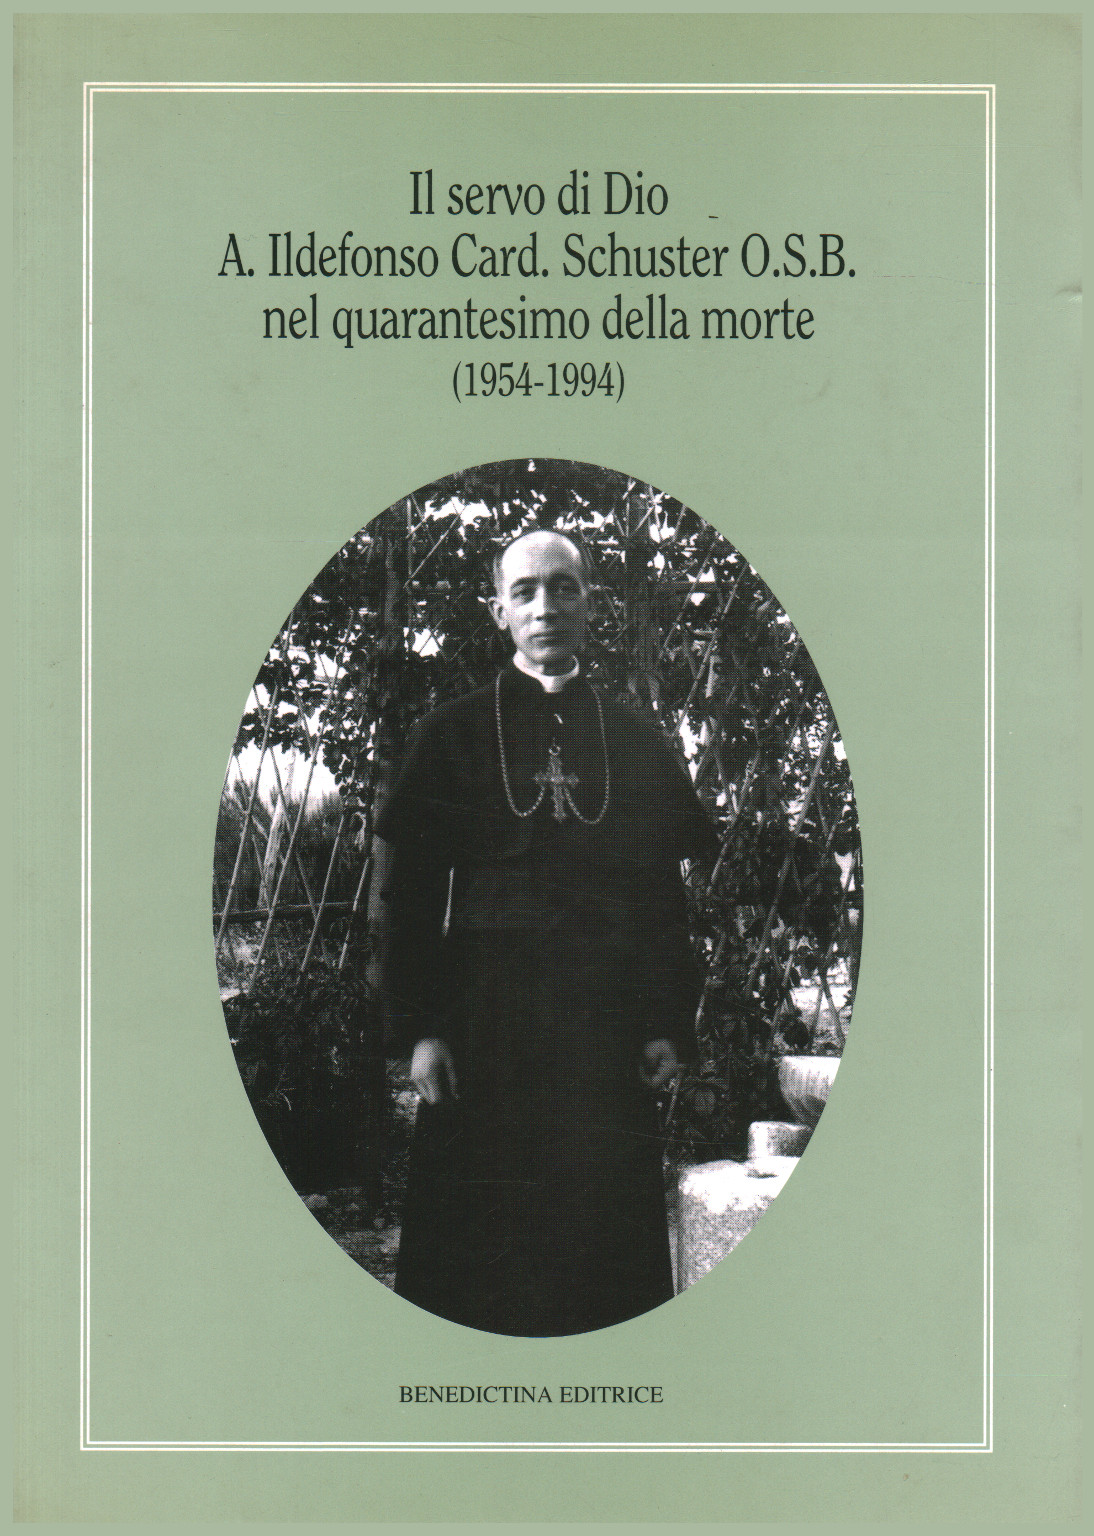 Il Servo di Dio A. Ildefonso card. Schuster O.S.B., s.a.